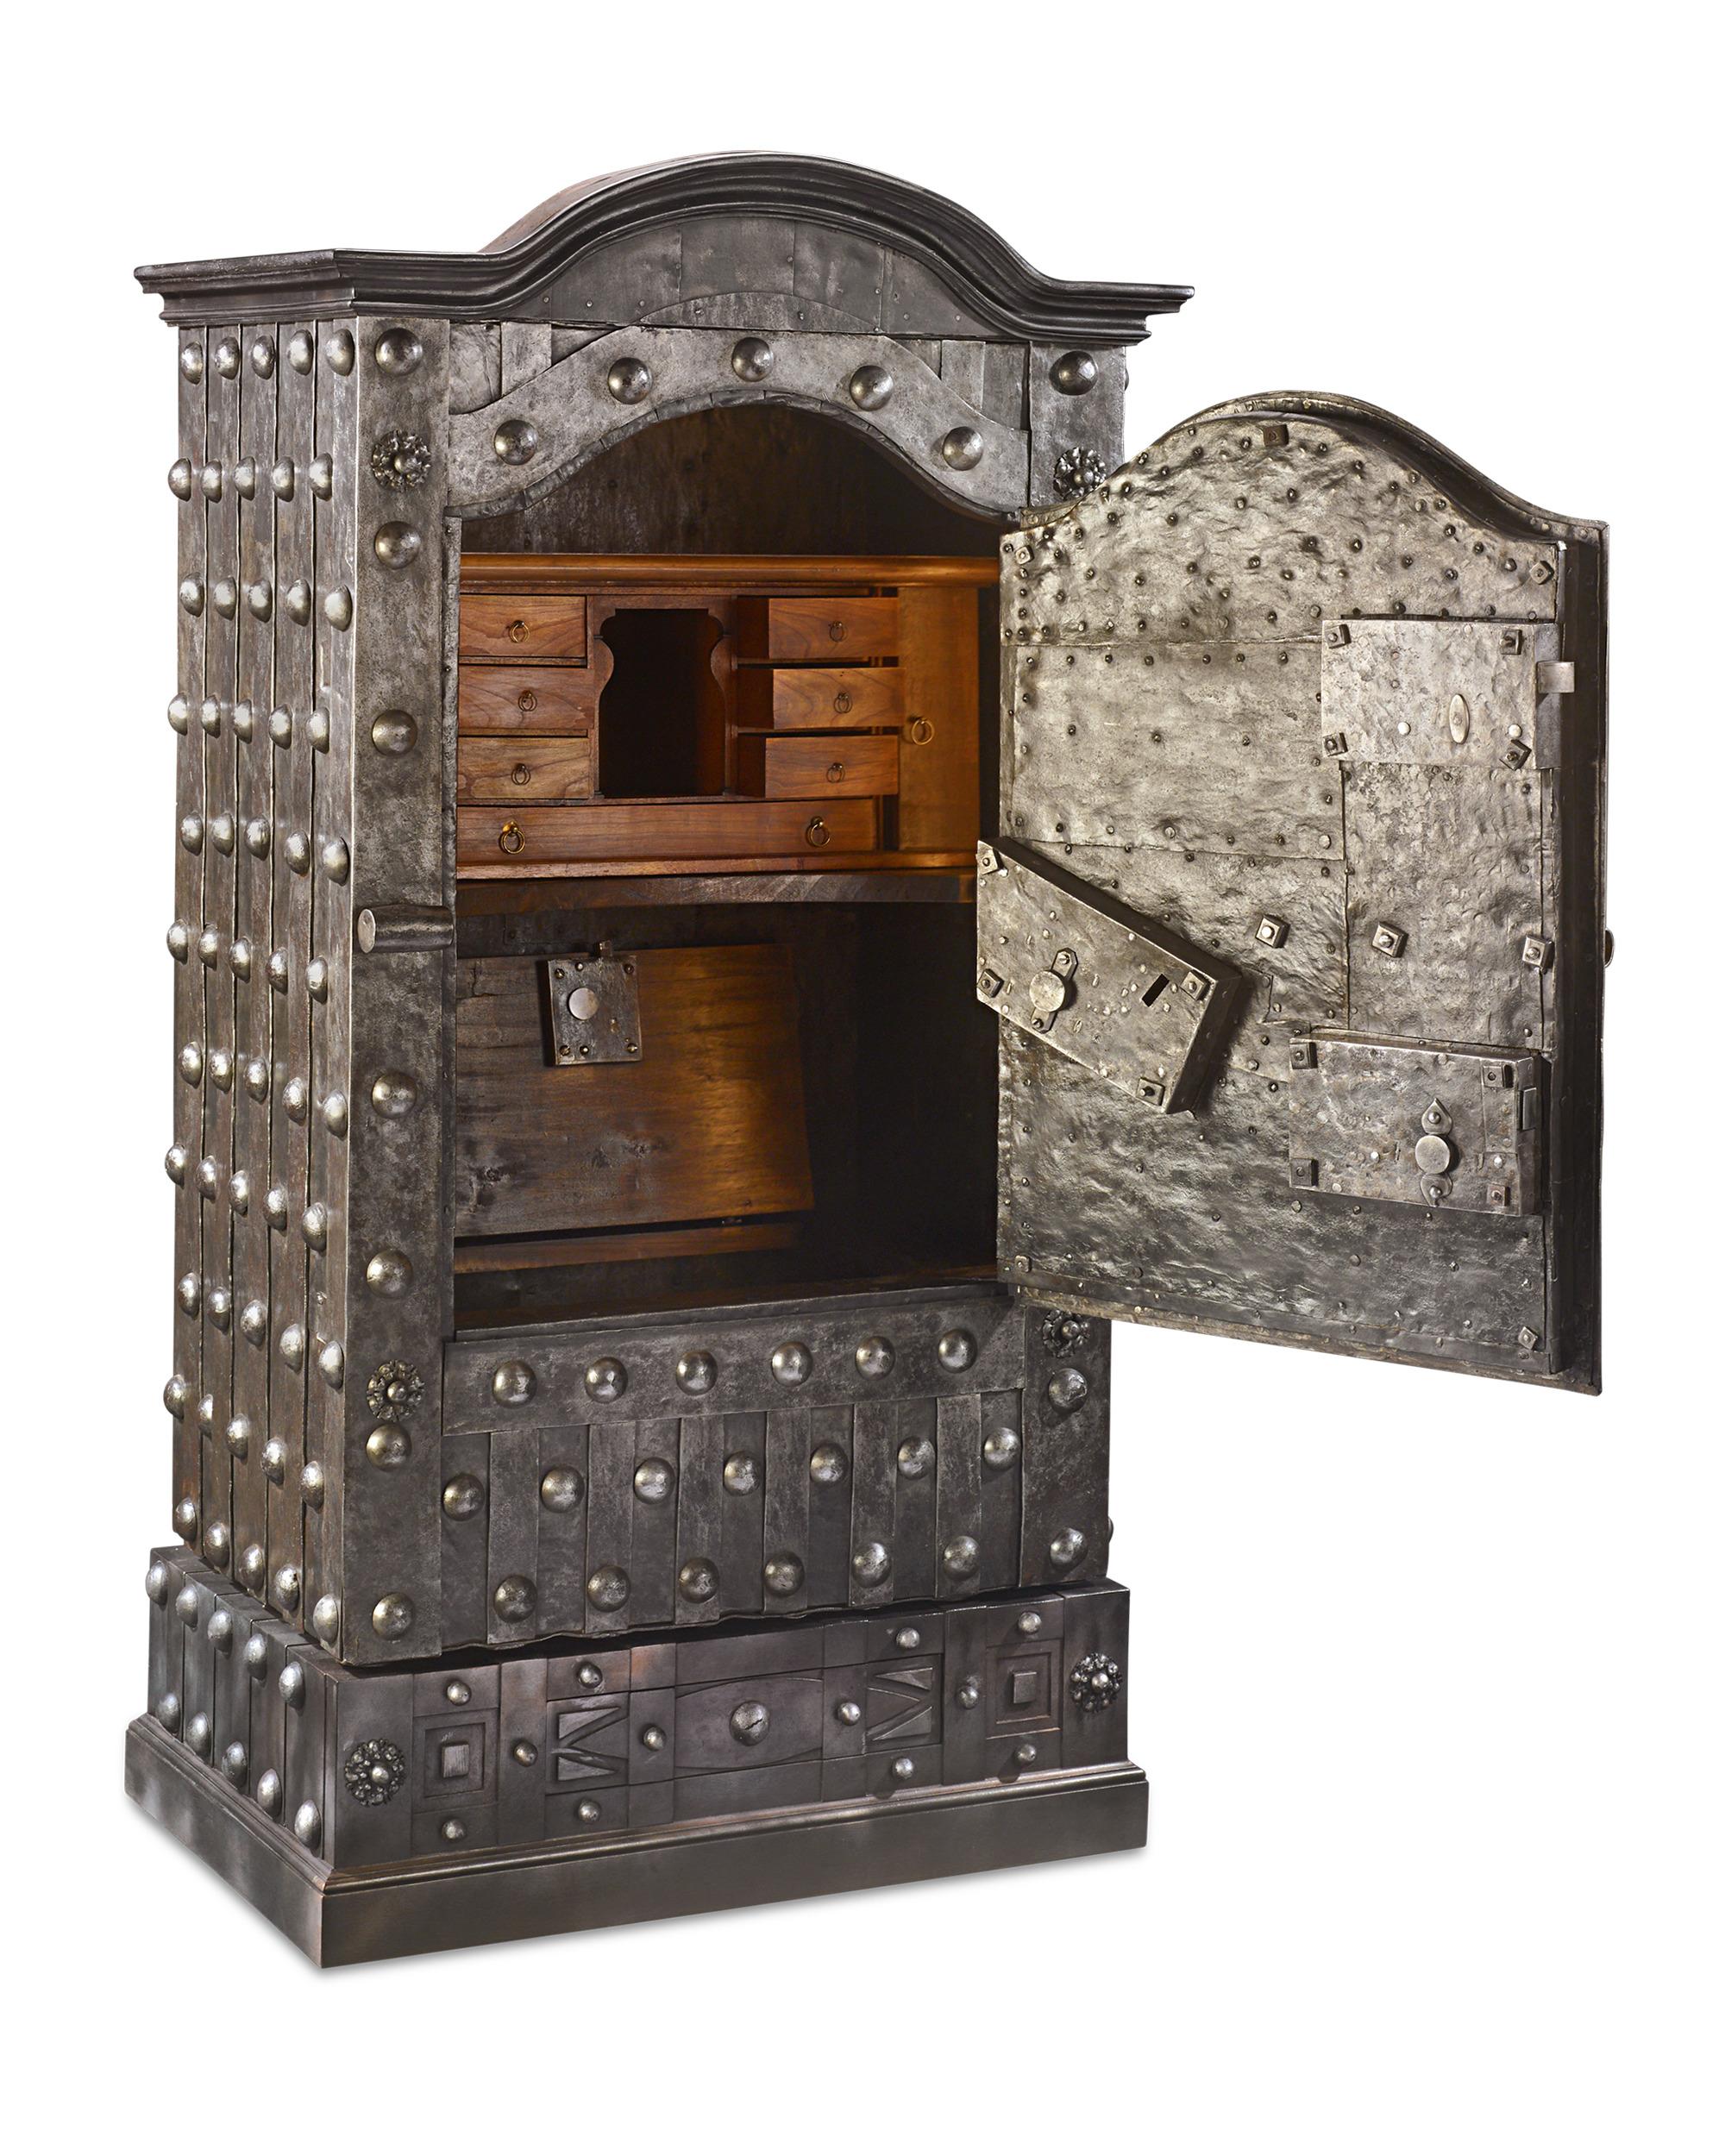 Visuellement imposant et mécaniquement complexe, ce formidable coffre-fort baroque italien aurait fourni une sécurité inégalée pour la conservation d'objets de valeur au XVIIIe siècle. Les motifs de clous de girofle qui recouvrent le coffre-fort